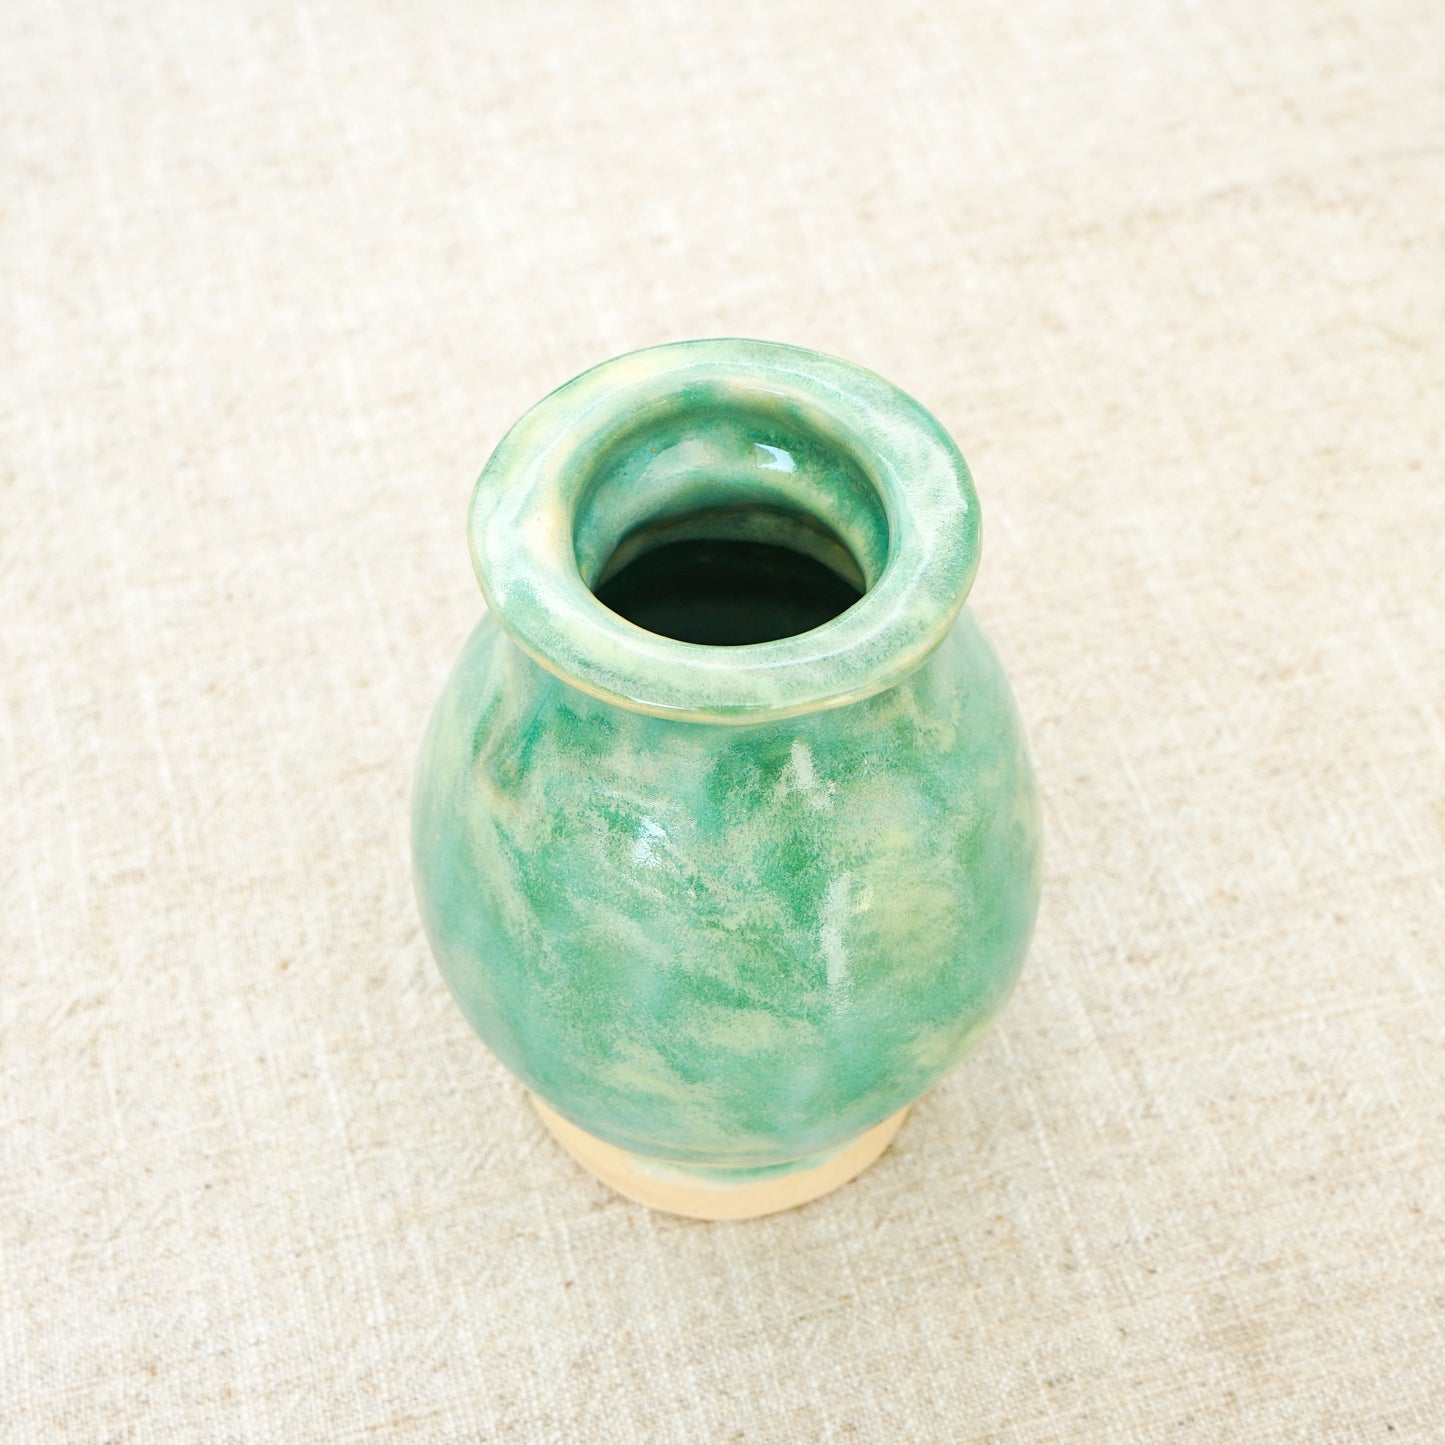 The Jade Mini Vase